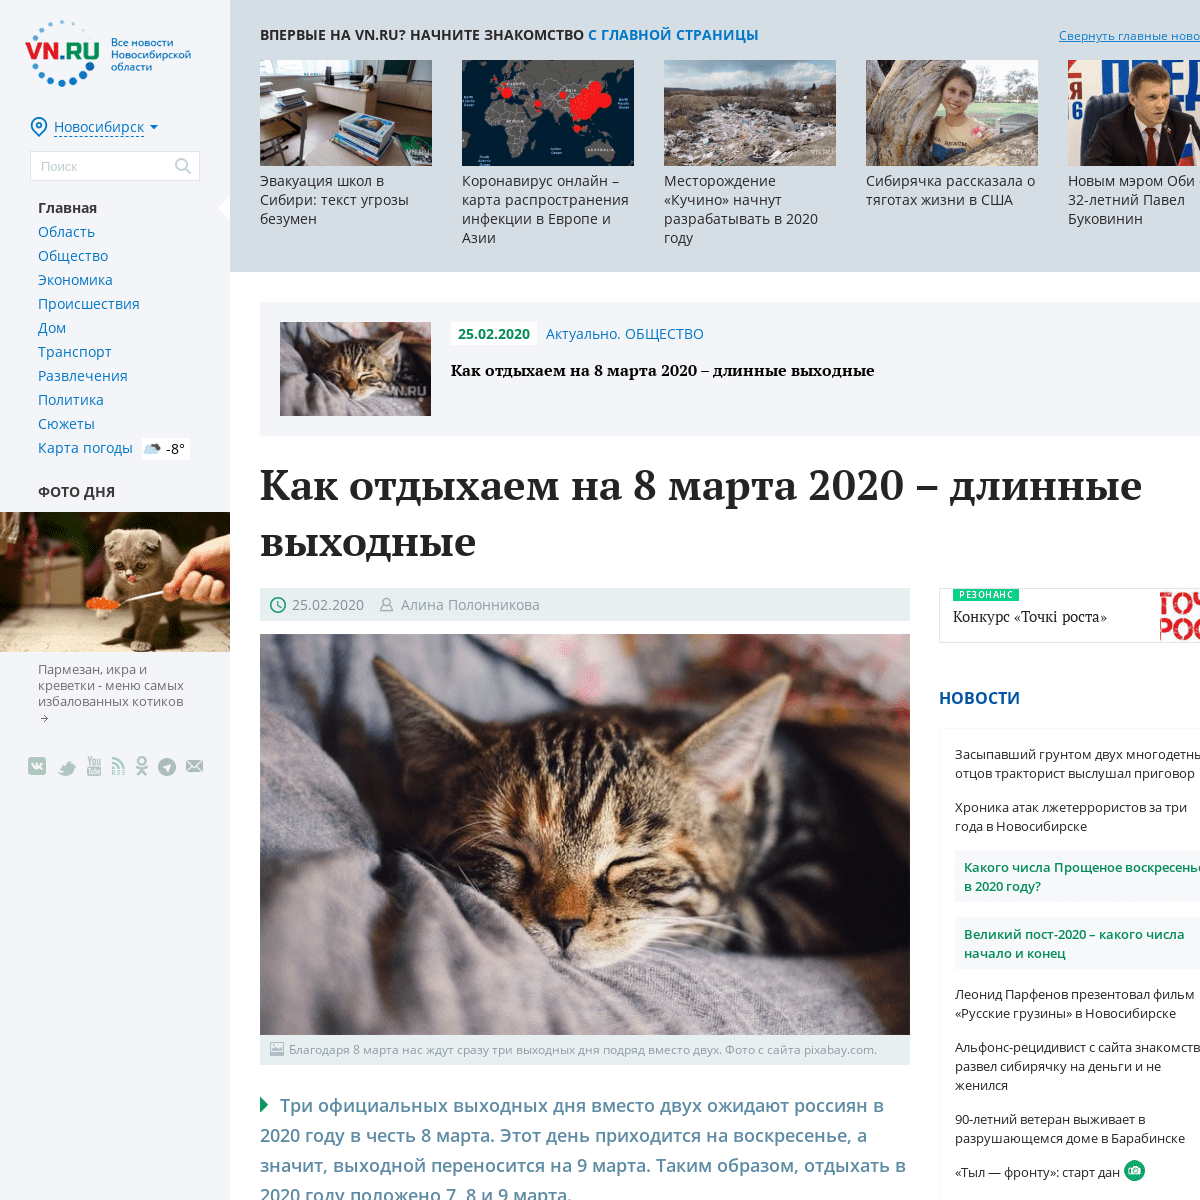 A complete backup of vn.ru/news-kak-otdykhaem-na-8-marta-2020-dlinnye-vykhodnye/